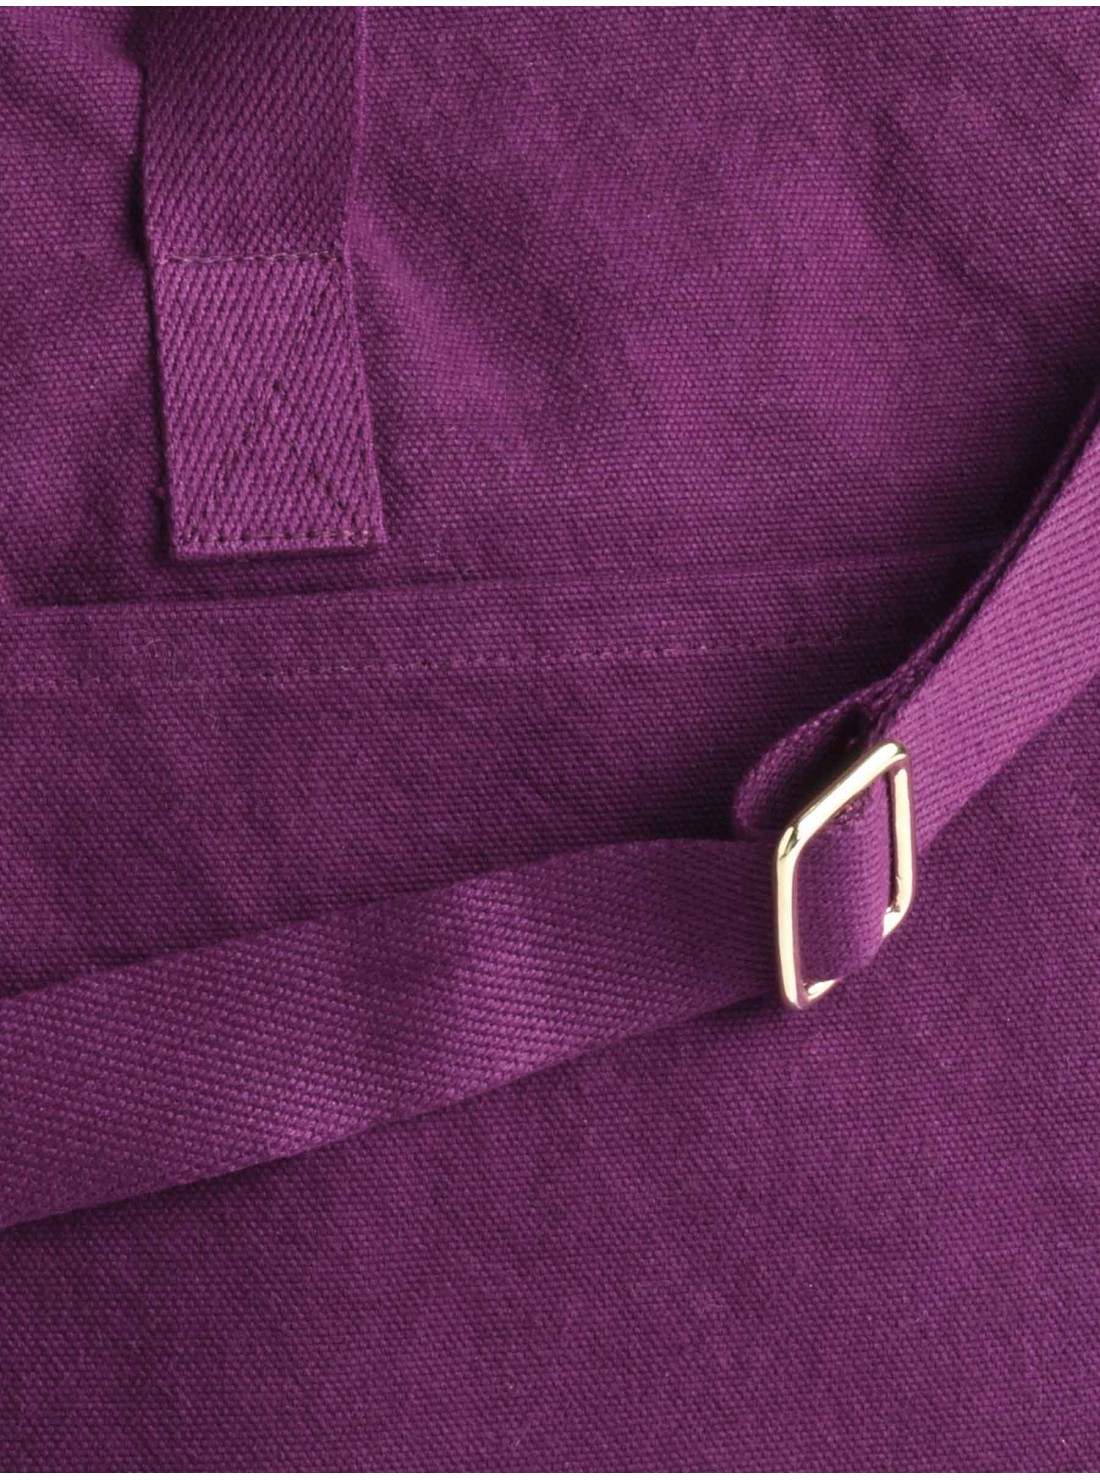 Sac voyage coton bio violet